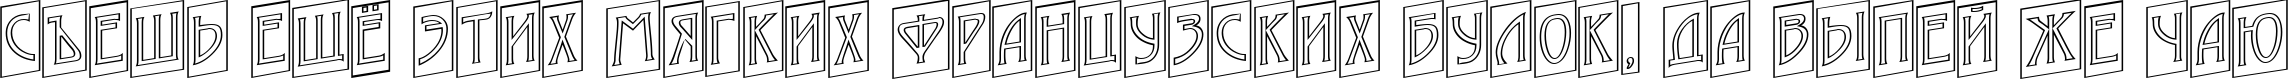 Пример написания шрифтом a_ModernoCmOtlUp текста на русском